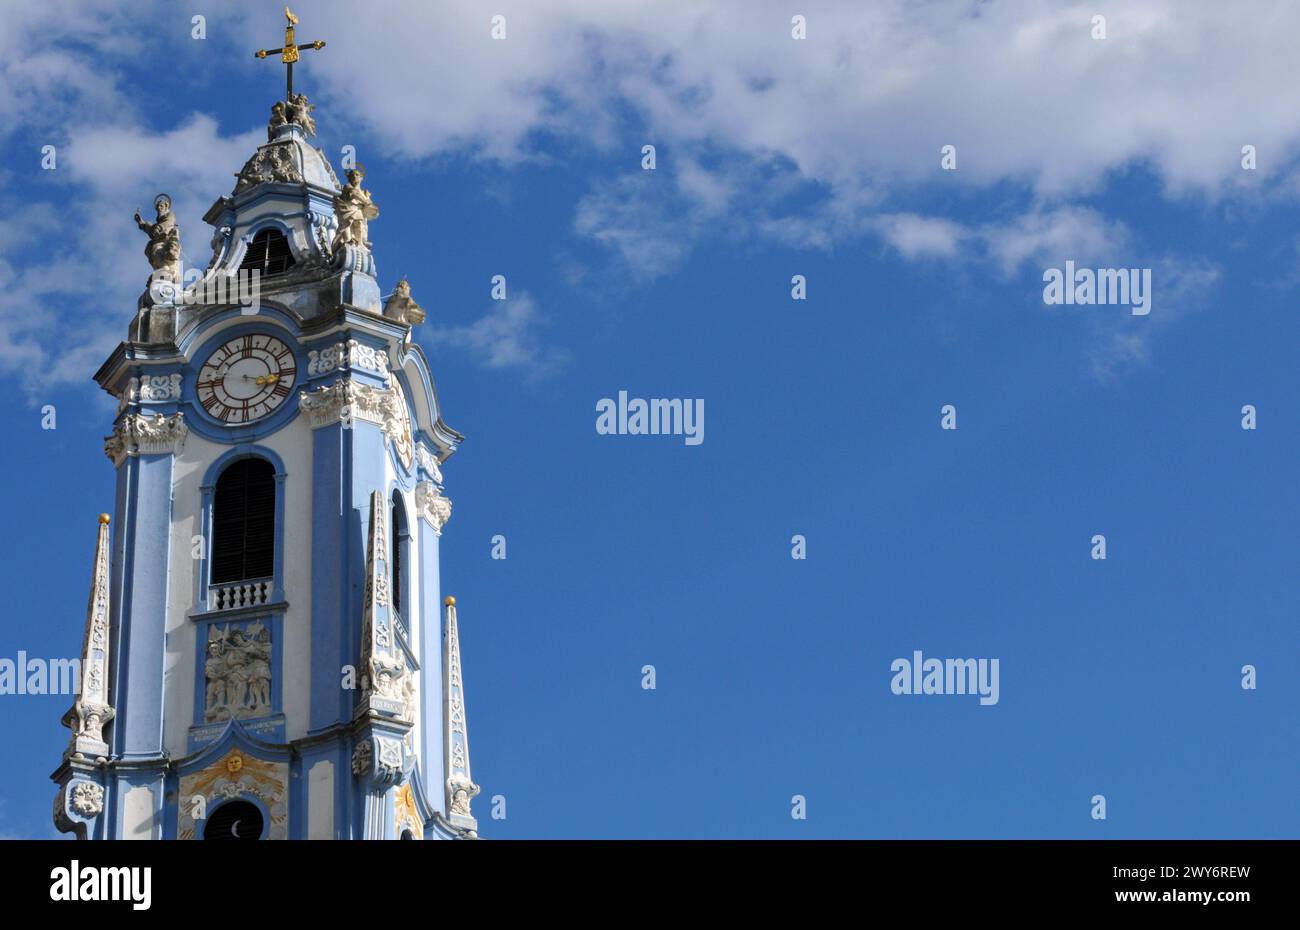 Der kunstvoll verzierte blau-weiße Turm der historischen Stiftskirche Durnstein ist ein Wahrzeichen des Wachautals entlang der Donau in Österreich. Stockfoto